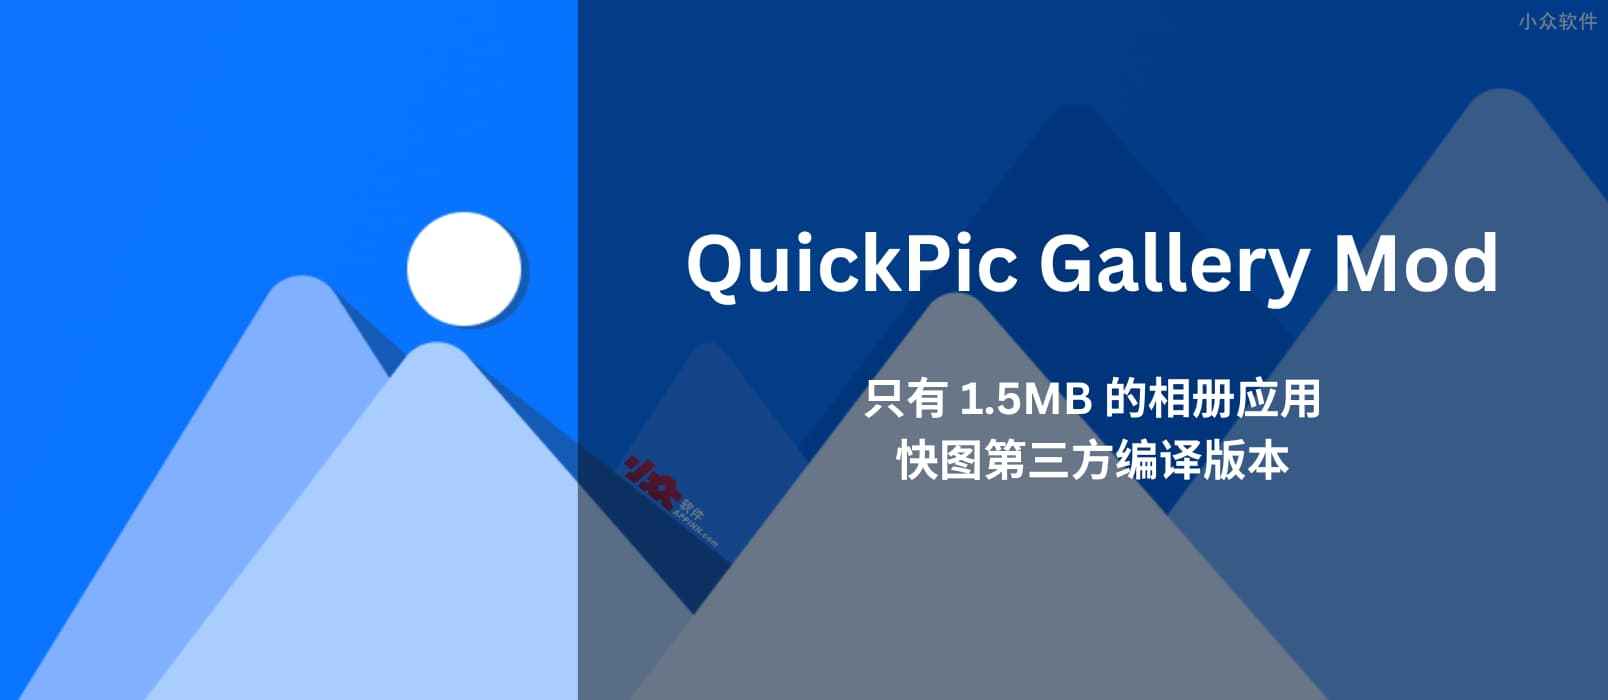 QuickPic Gallery Mod - 只有 1.5MB 的相册应用，快图第三方编译版本[Android]